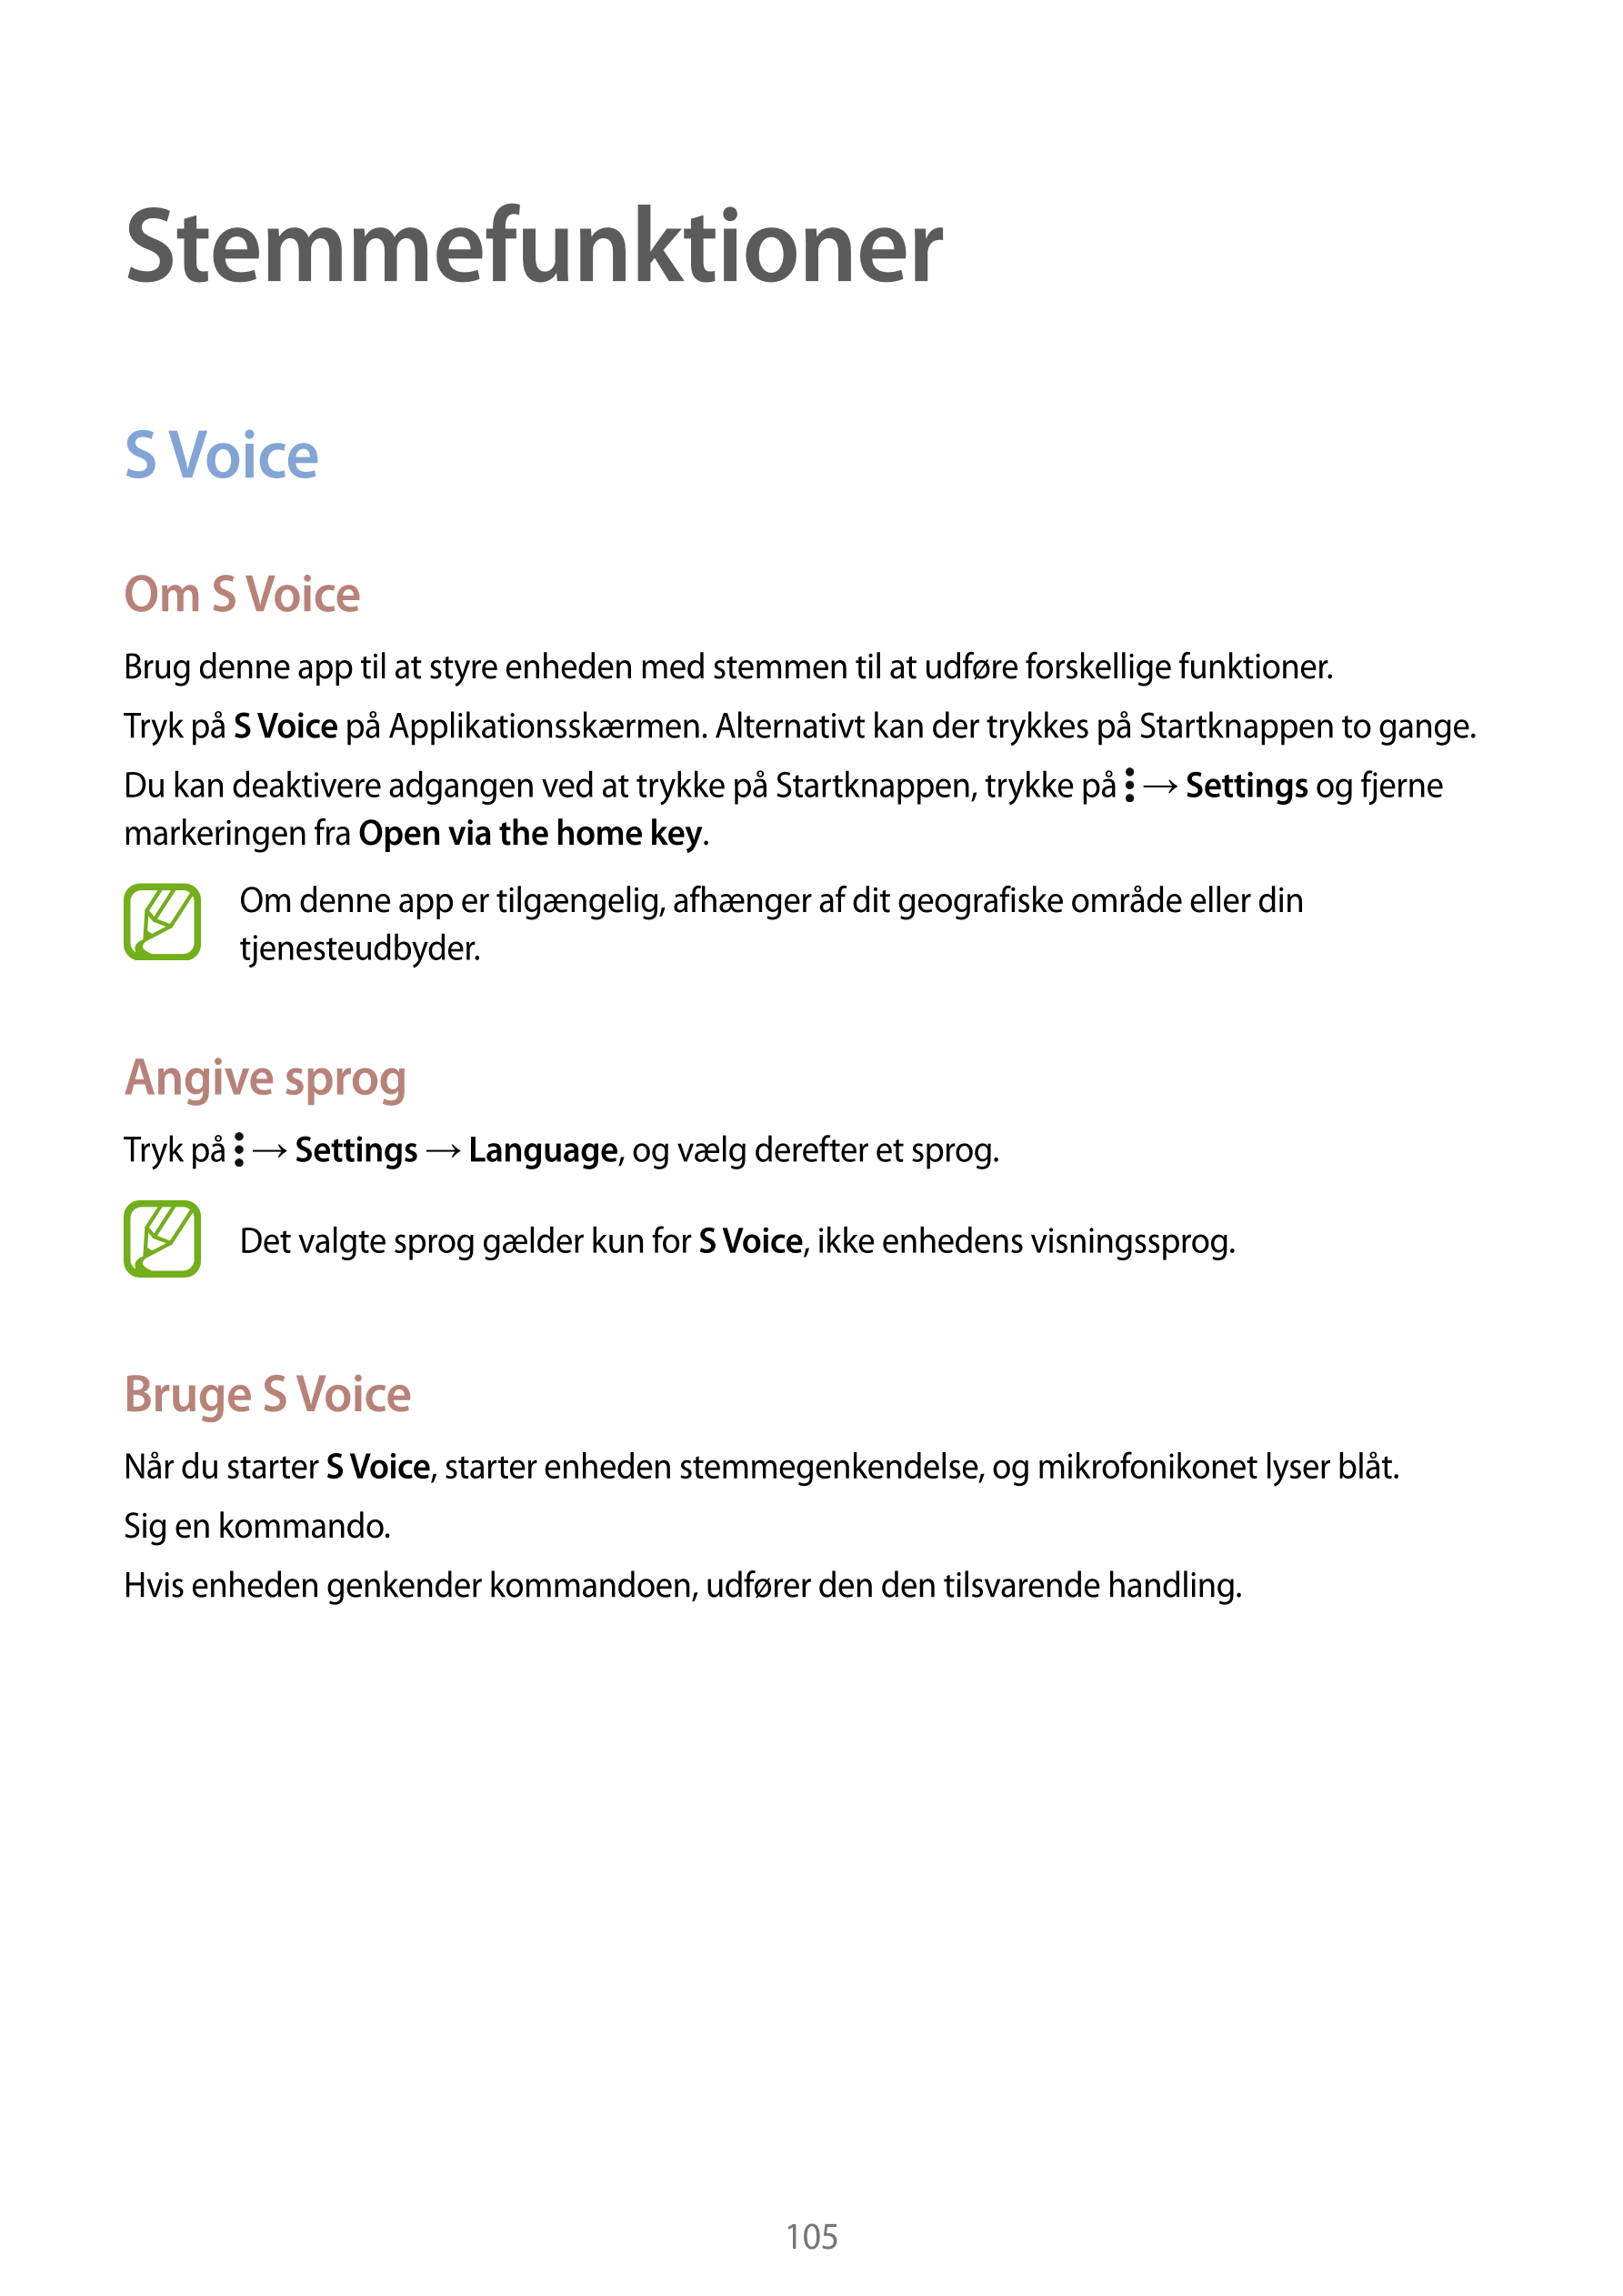 Stemmefunktioner
S Voice
Om S Voice
Brug denne app til at styre enheden med stemmen til at udføre forskellige funktioner.
Tryk p